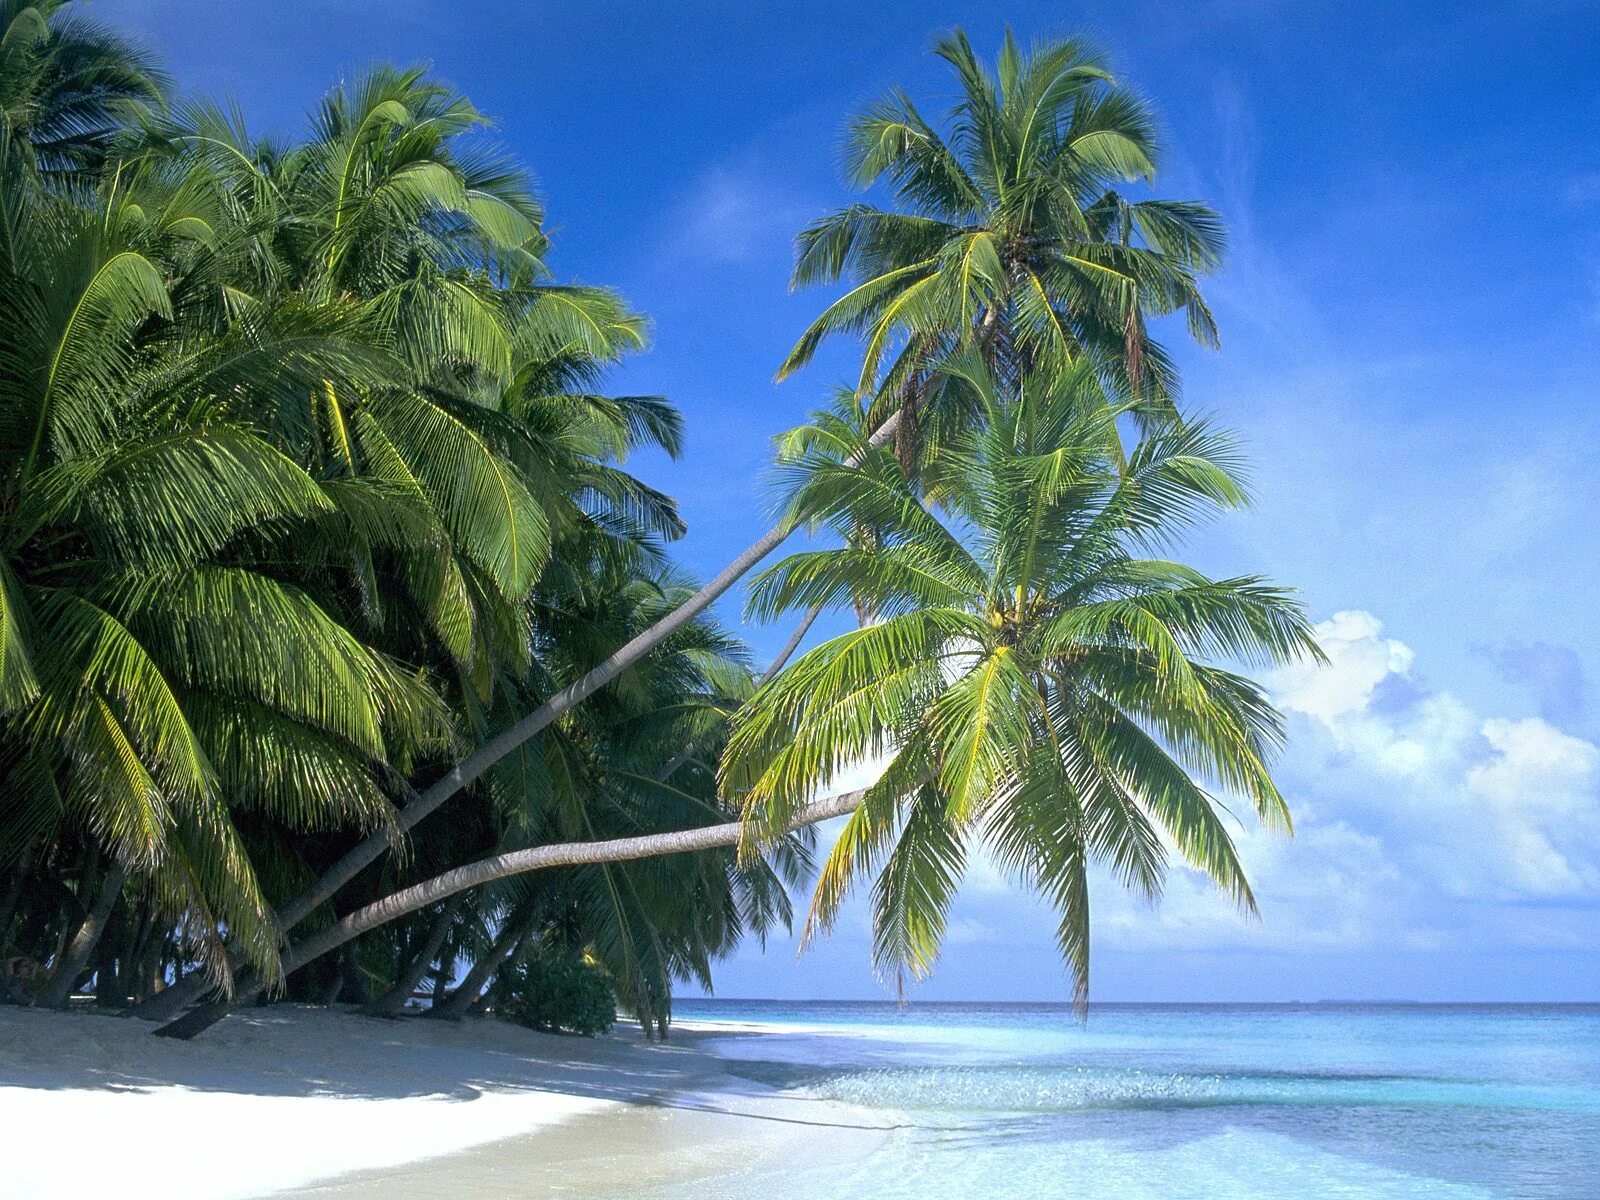 Парадиз остров Карибского моря. Пляж с пальмами. Тропический остров. Пейзаж с пальмами.